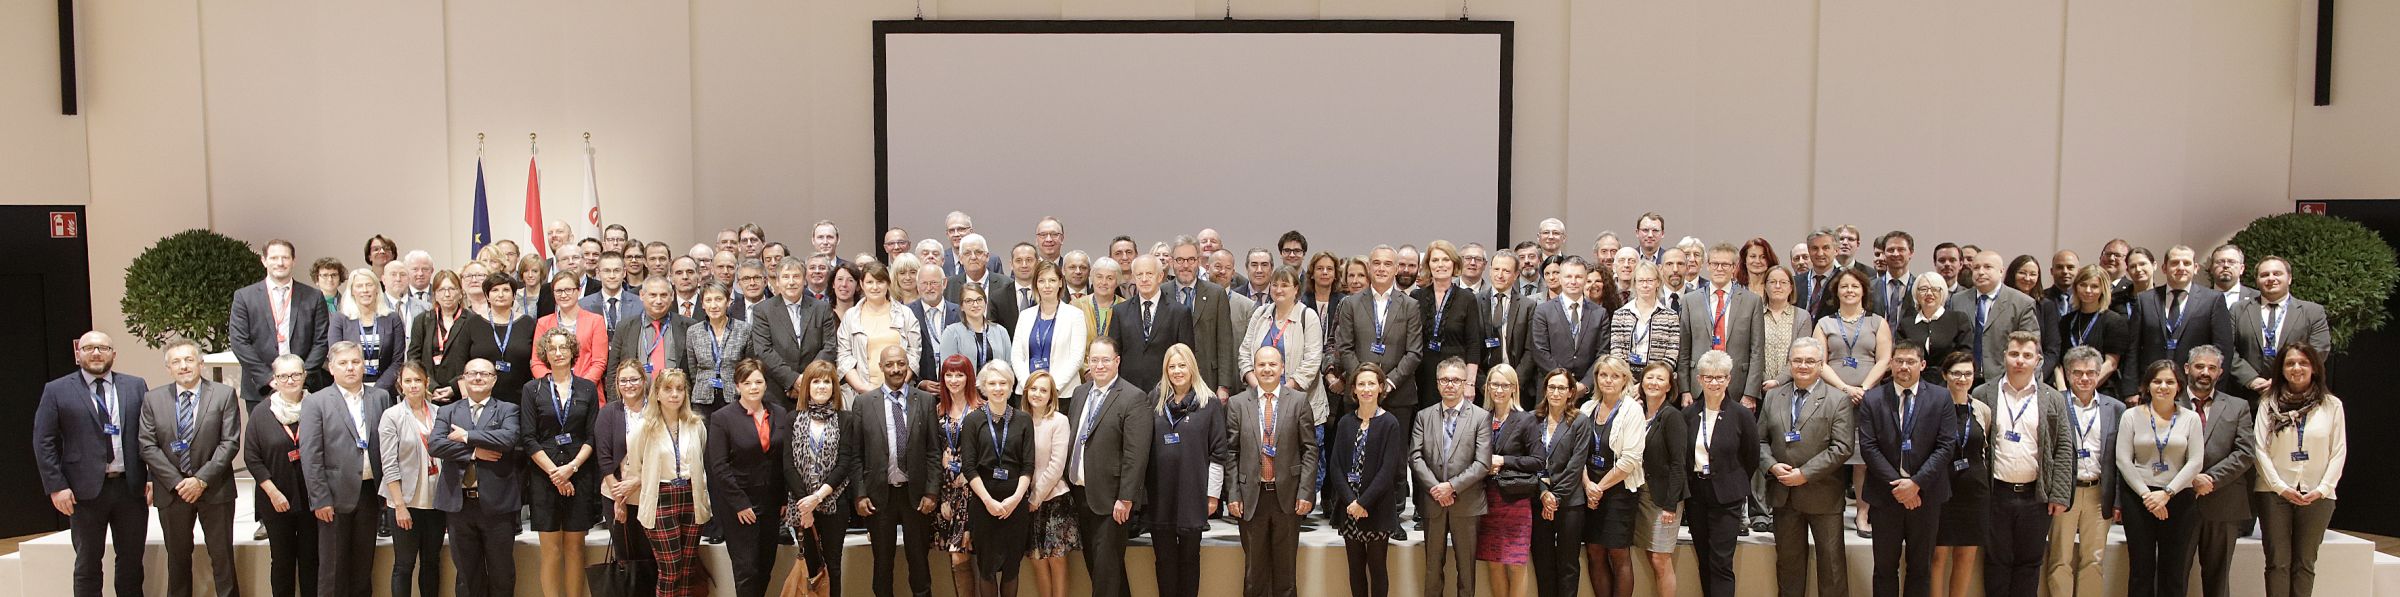 Spotkanie Głównych Lekarzy Weterynarii i Szefów Służb ds. Bezpieczeństwa Żywności w Wiedniu